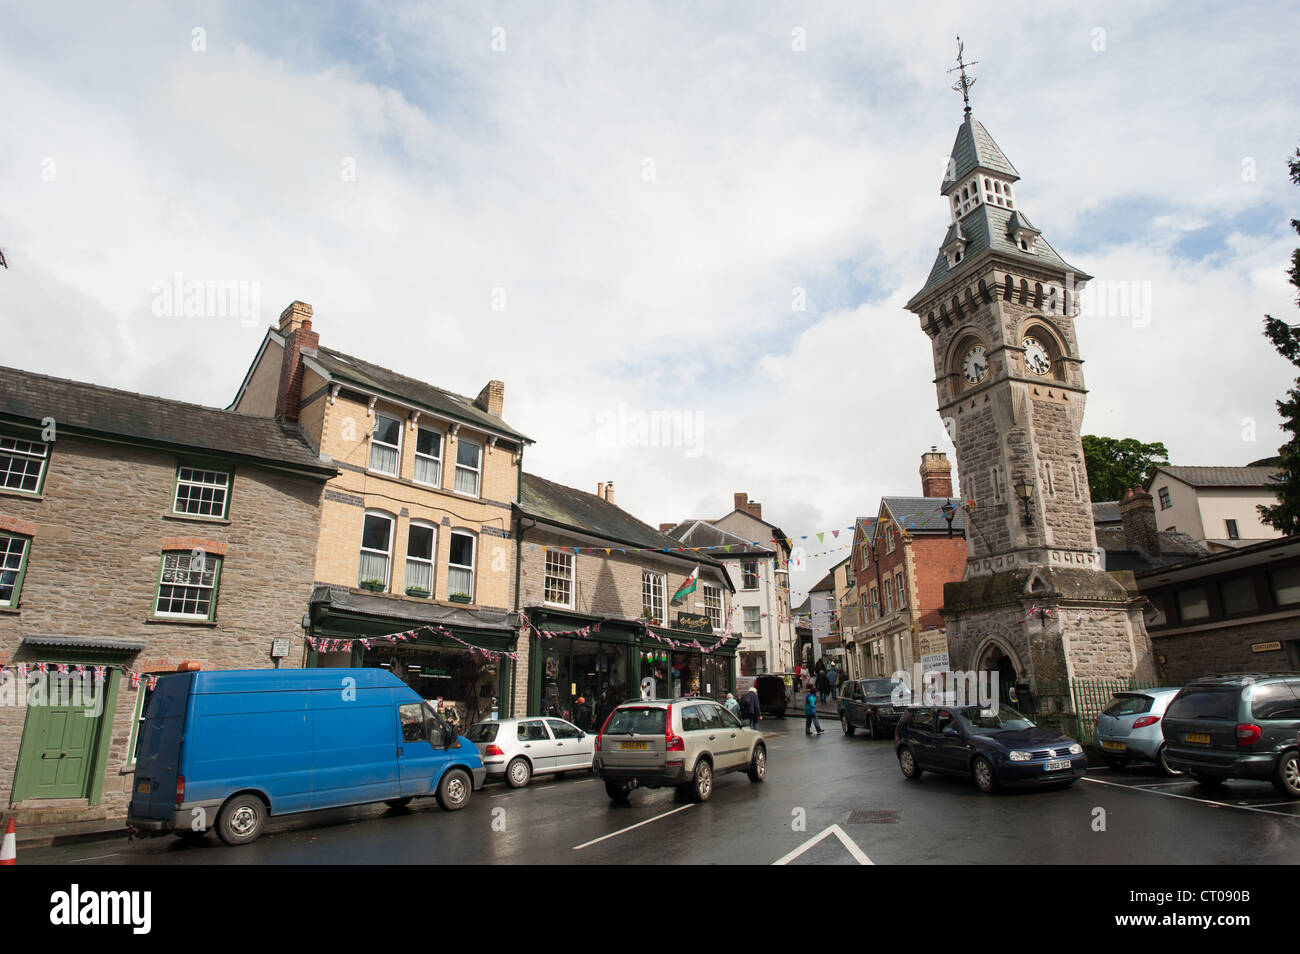 HAY-on-Wye, au Pays de Galles - Main Square et tour de l'horloge à Hay-on-Wye dans l'Est du pays de Galles. Décrite comme 'la ville de livres", il accueille chaque année un festival littéraire connu sous le nom de Hay Festival. Banque D'Images